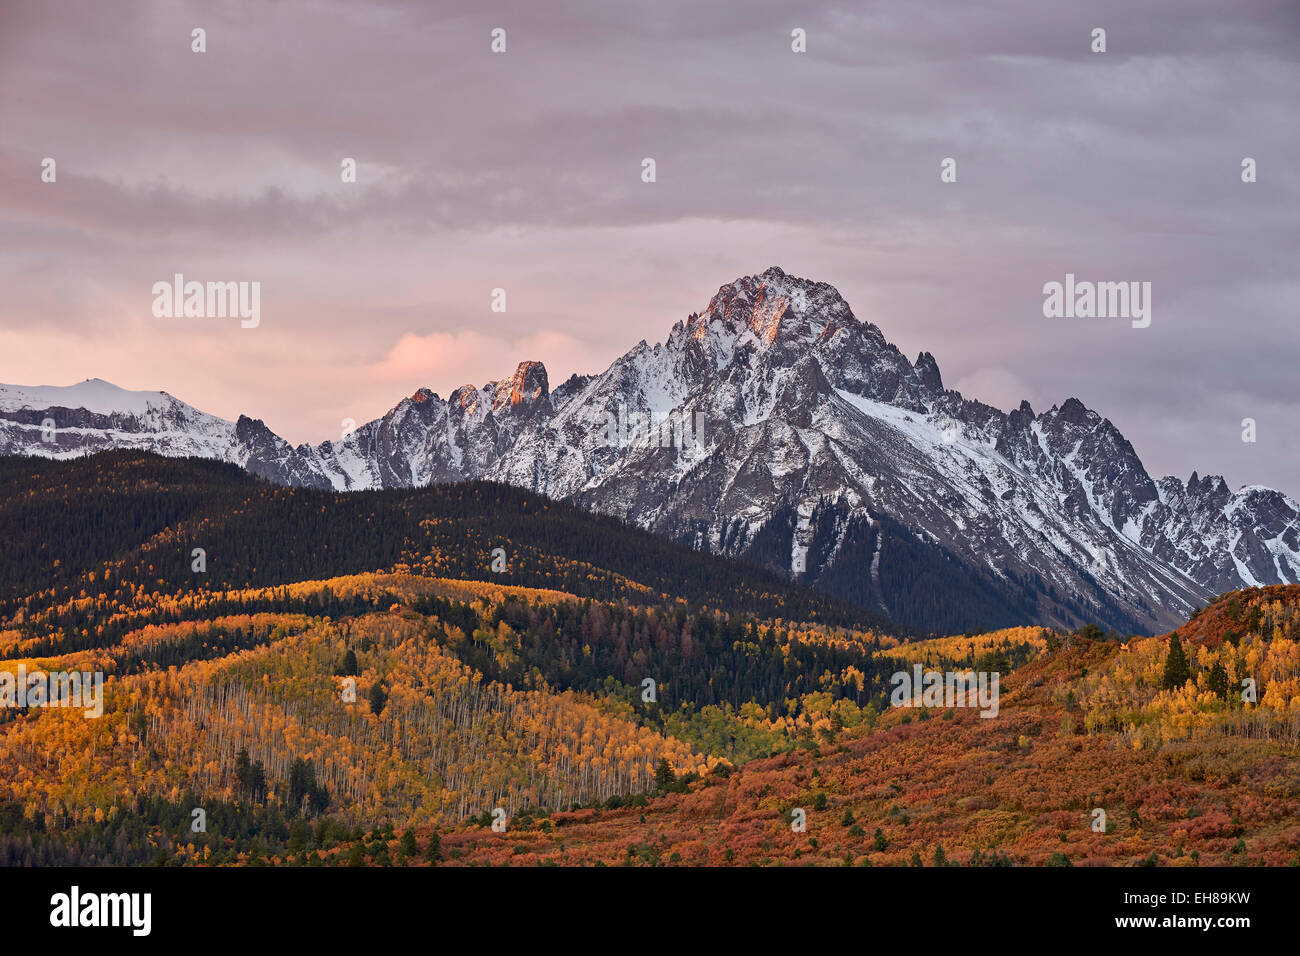 Mount Sneffels au lever du soleil à l'automne, l'Uncompahgre National Forest, Colorado, États-Unis d'Amérique, Amérique du Nord Banque D'Images